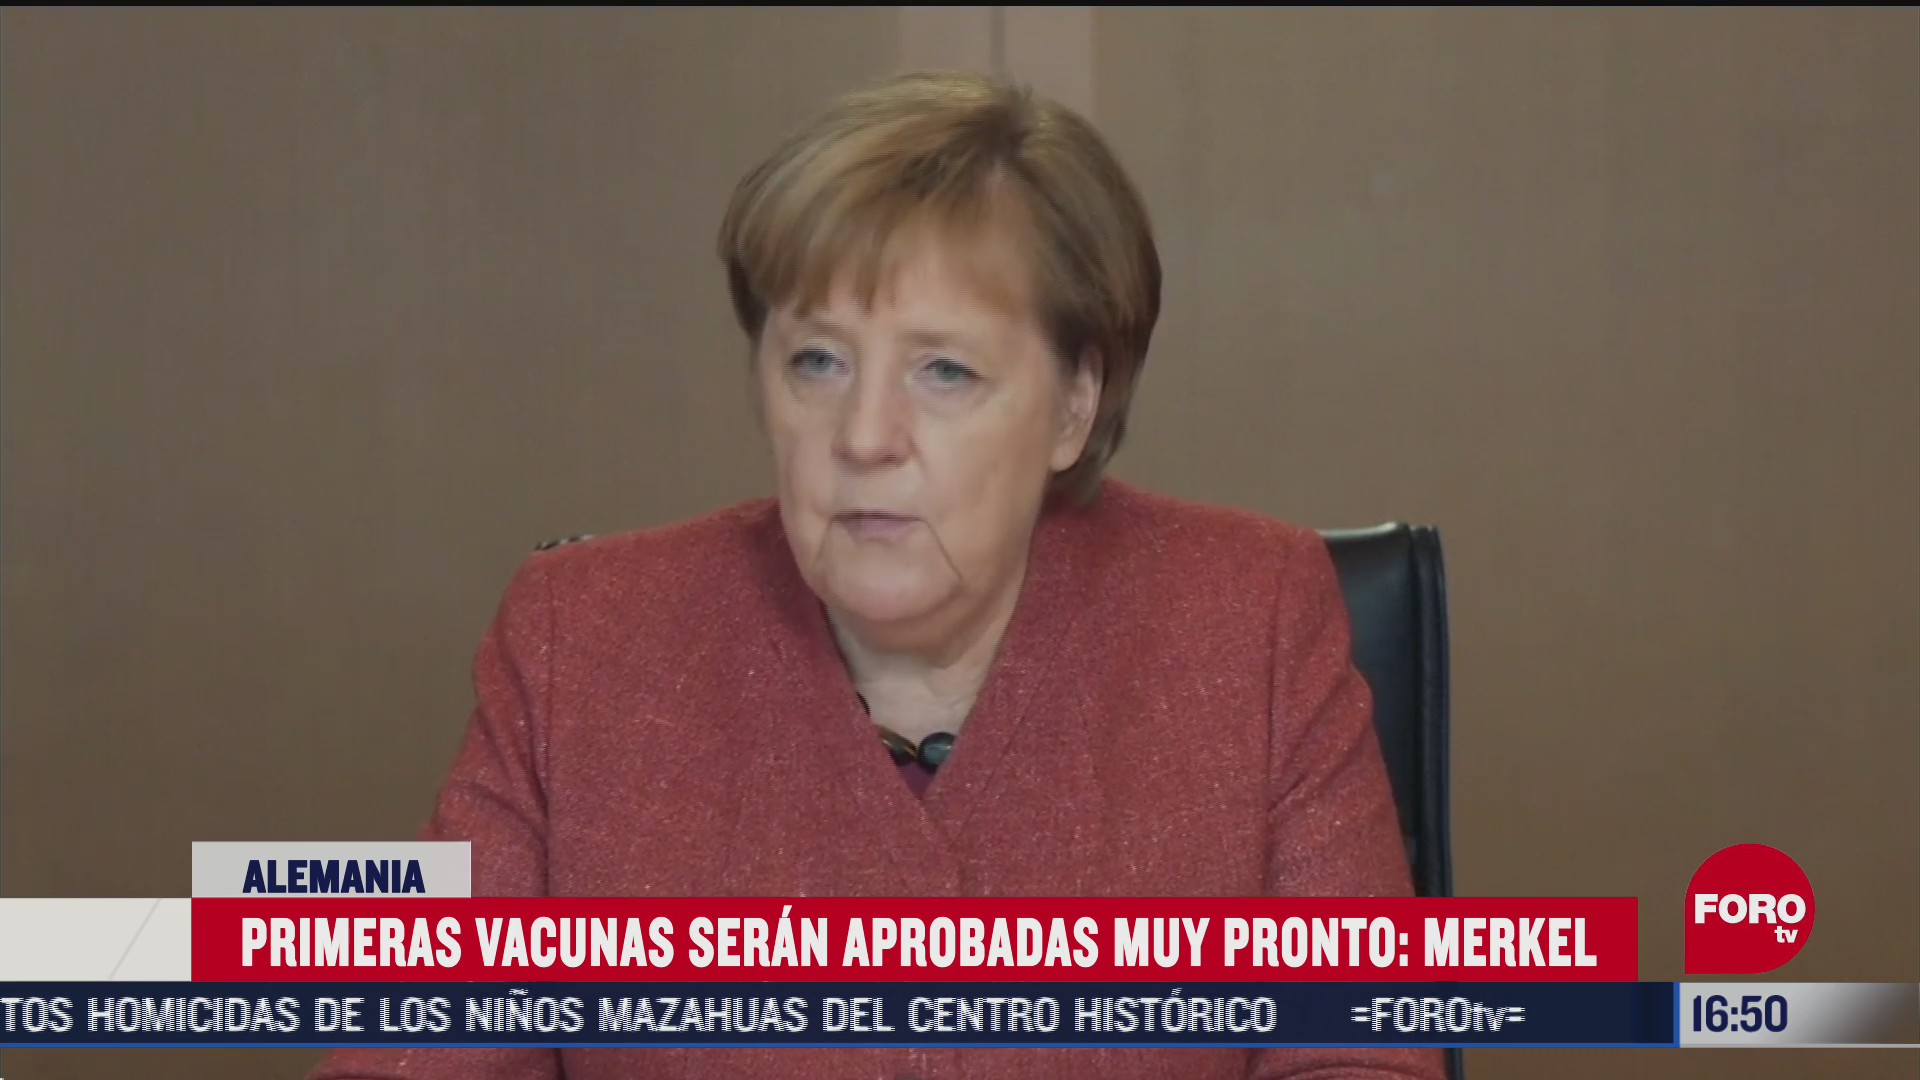 alemania no hara obligatoria vacuna contra el covid